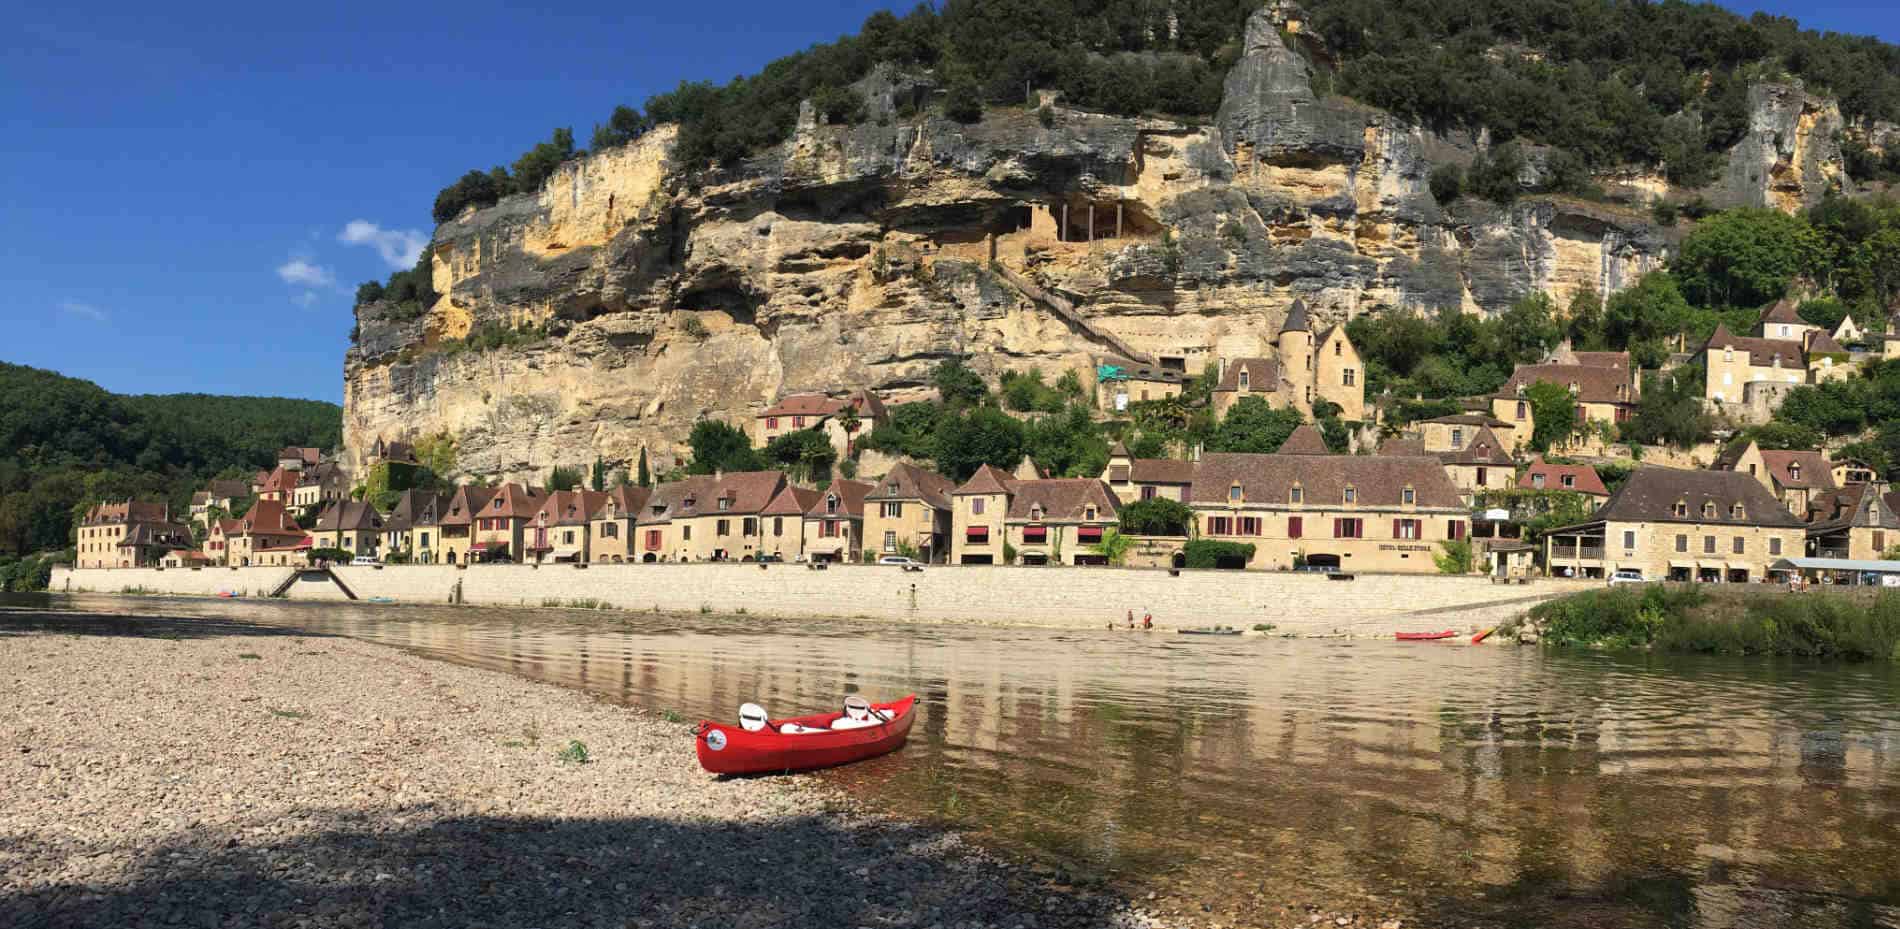 Canoe Dordogne rate rental canoe kayak rental on the dordogne